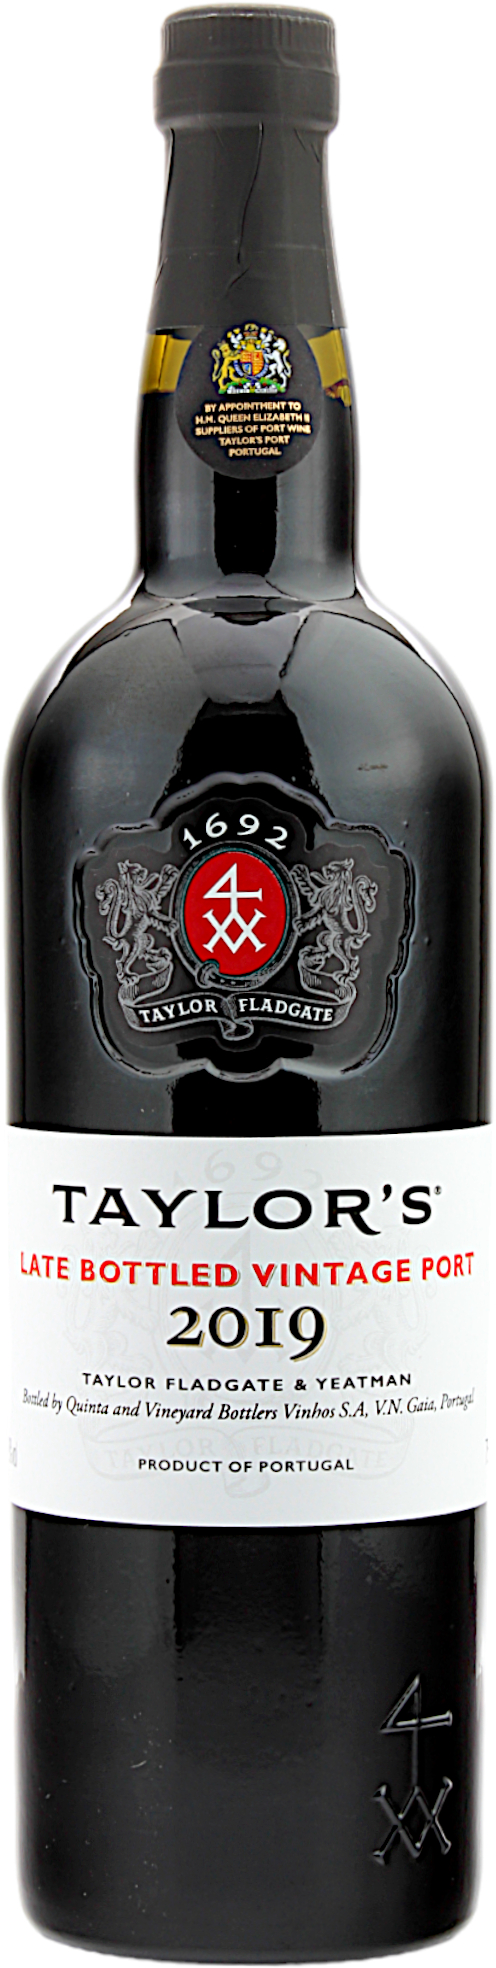 Taylor's Late Bottled Vintage Port 2019 19.0% 0,75l